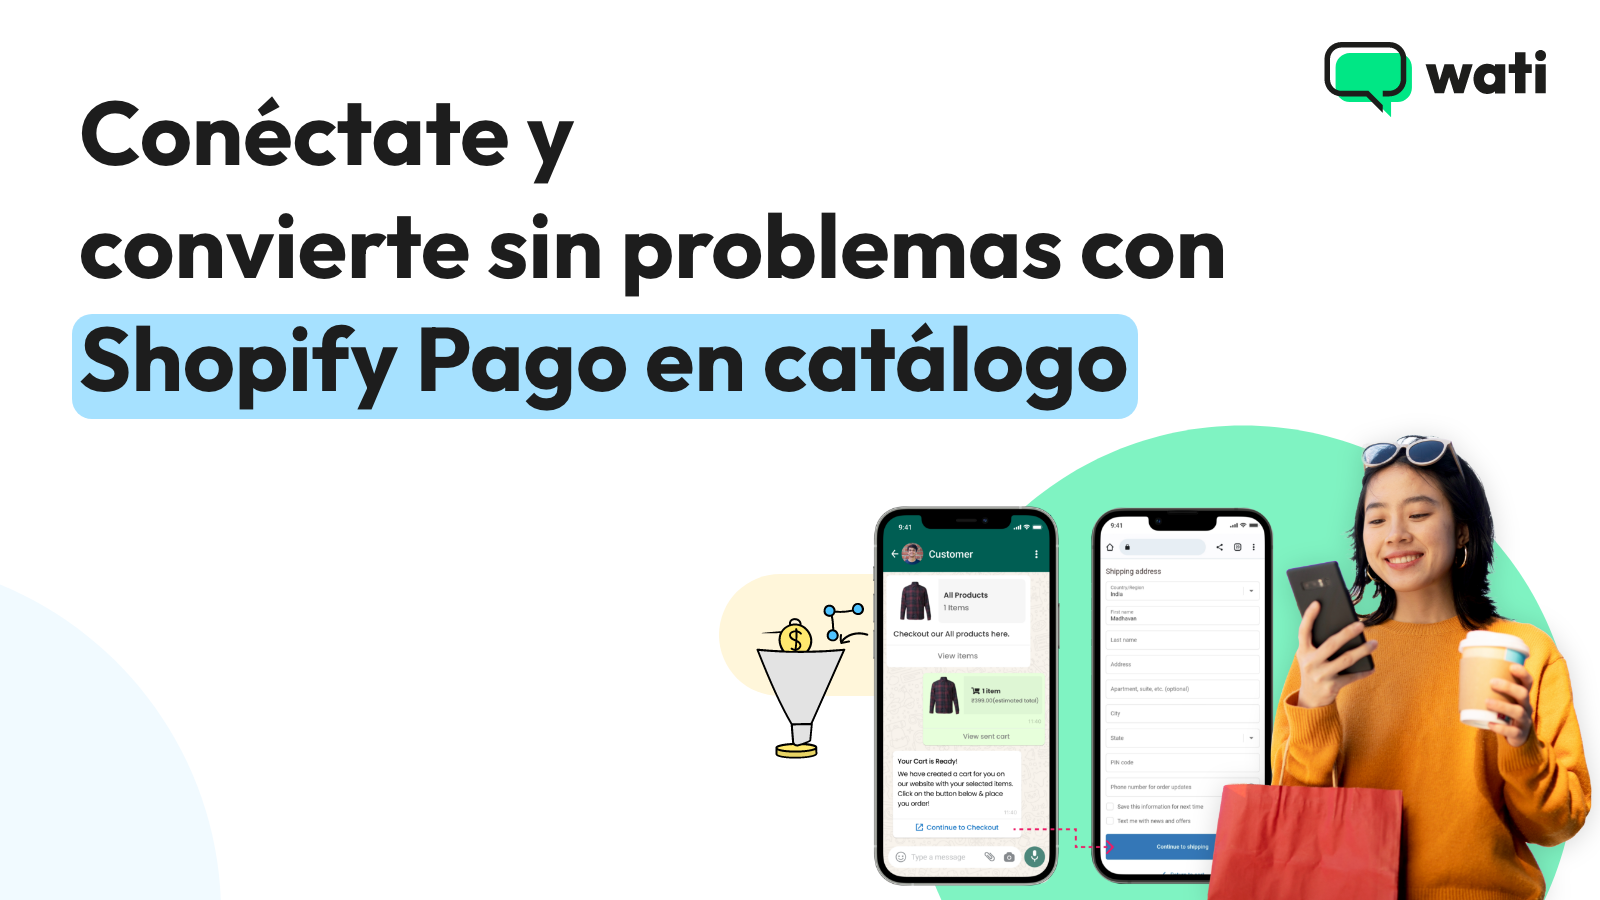 Conéctate y convierte sin problemas con Shopify Pago en catálogo